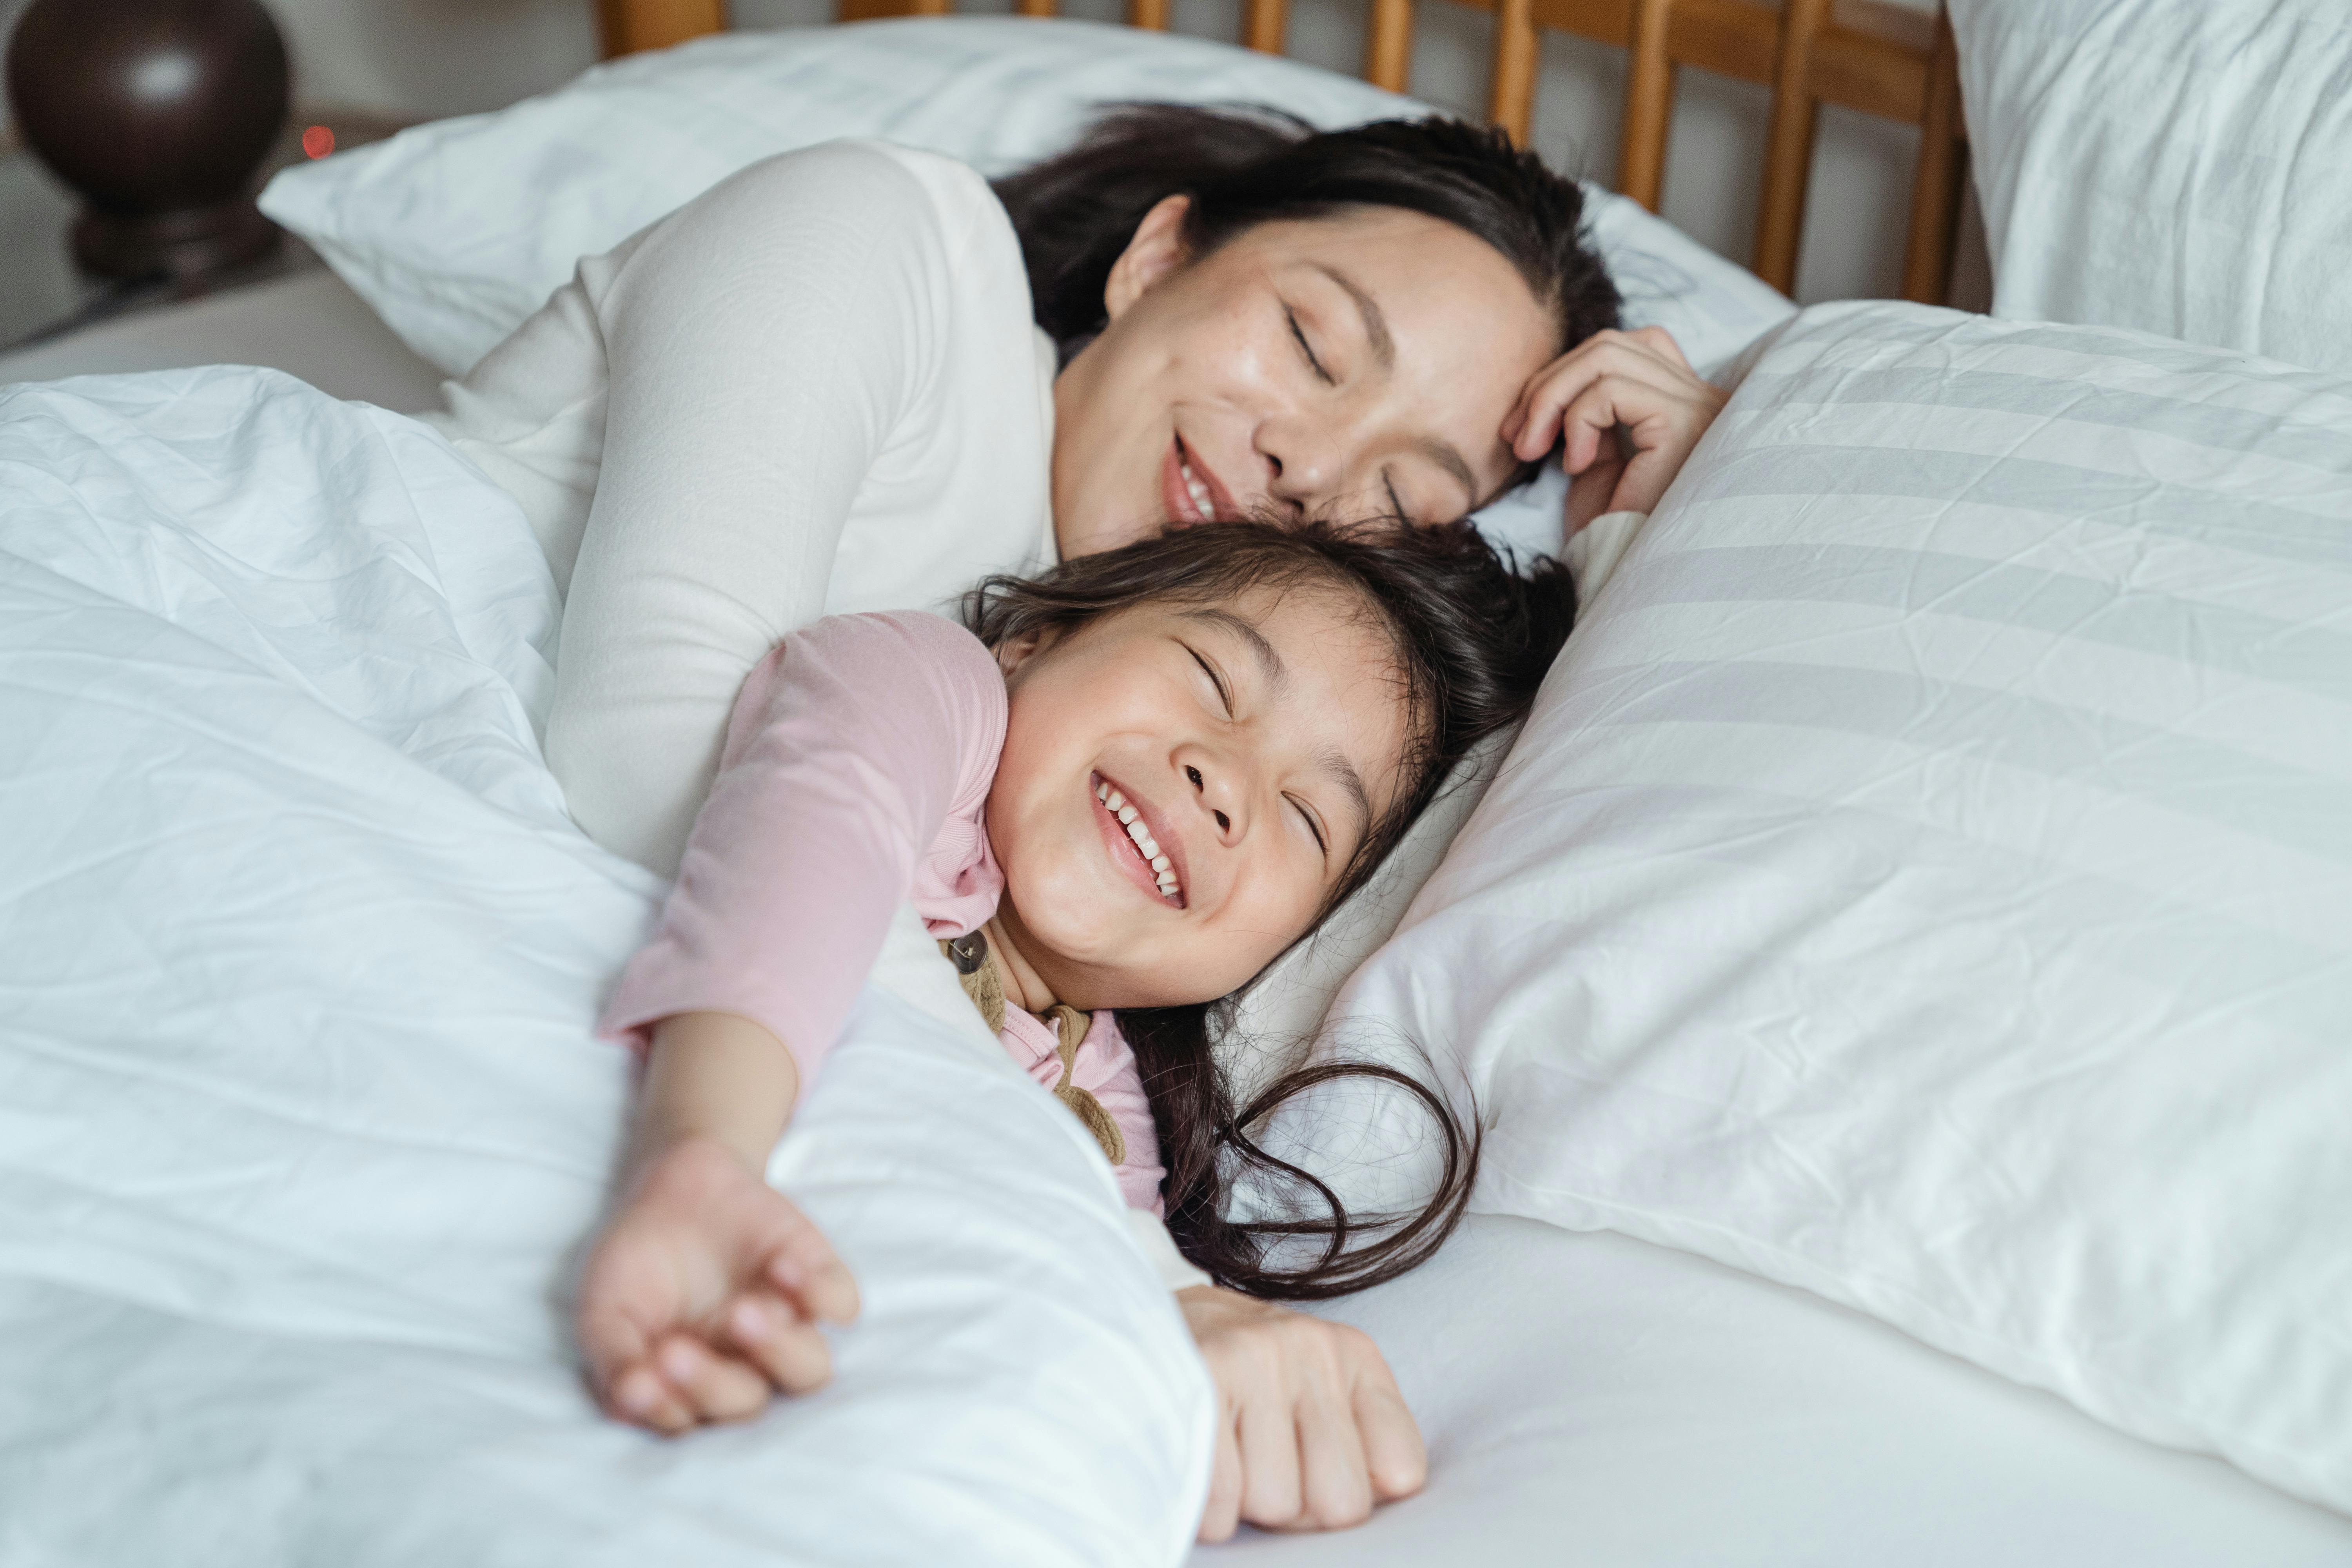 Une femme sourit tout en réconfortant une petite fille alors qu'elles sont allongées dans un lit ensemble | Source : Pexels